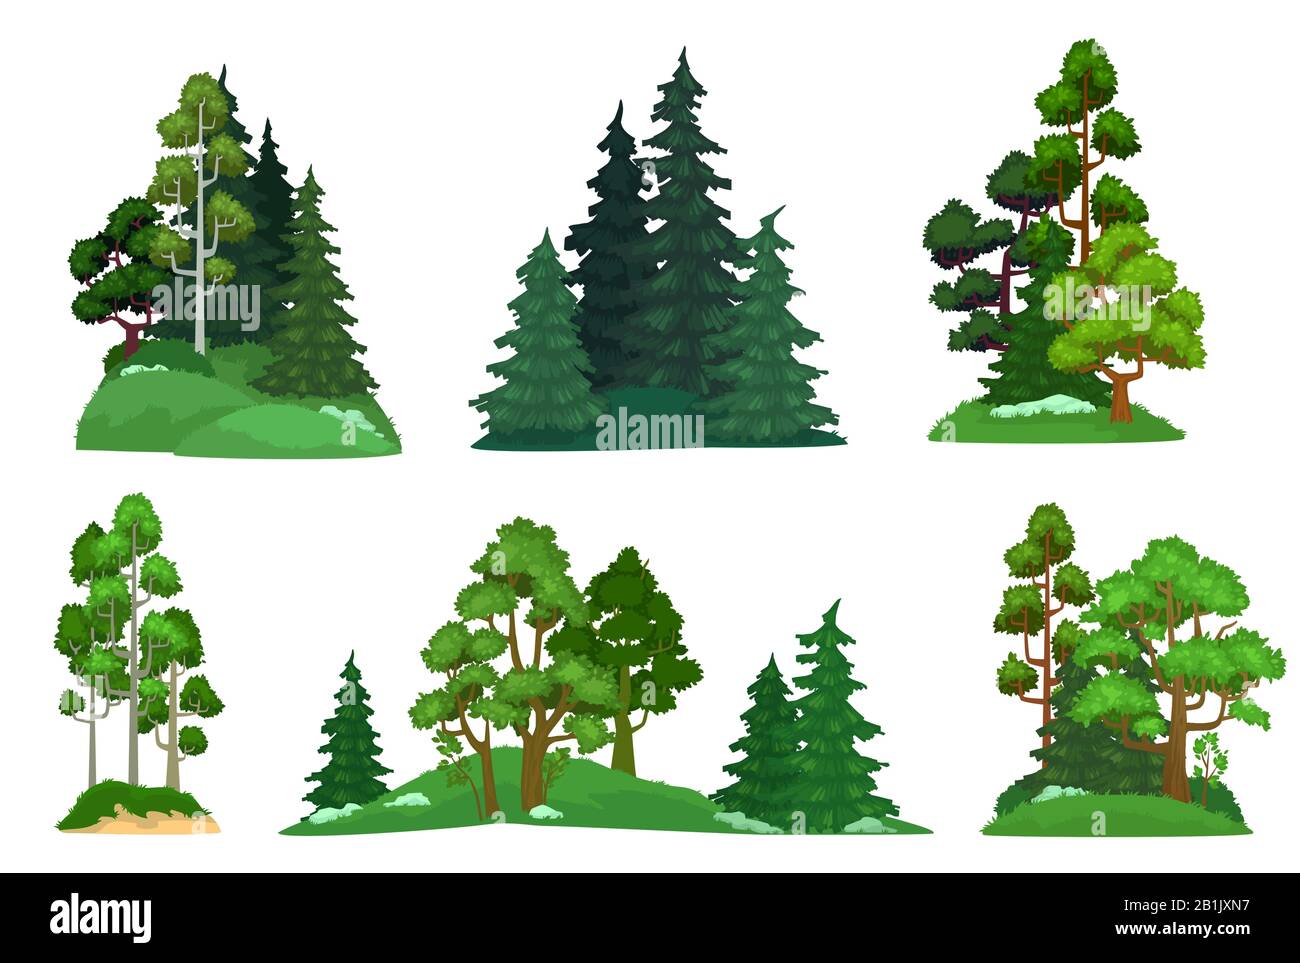 Arbres forestiers. Sapin vert, forêts de la composition du pin et arbres isolés scénario vectoriel de dessin animé Illustration de Vecteur